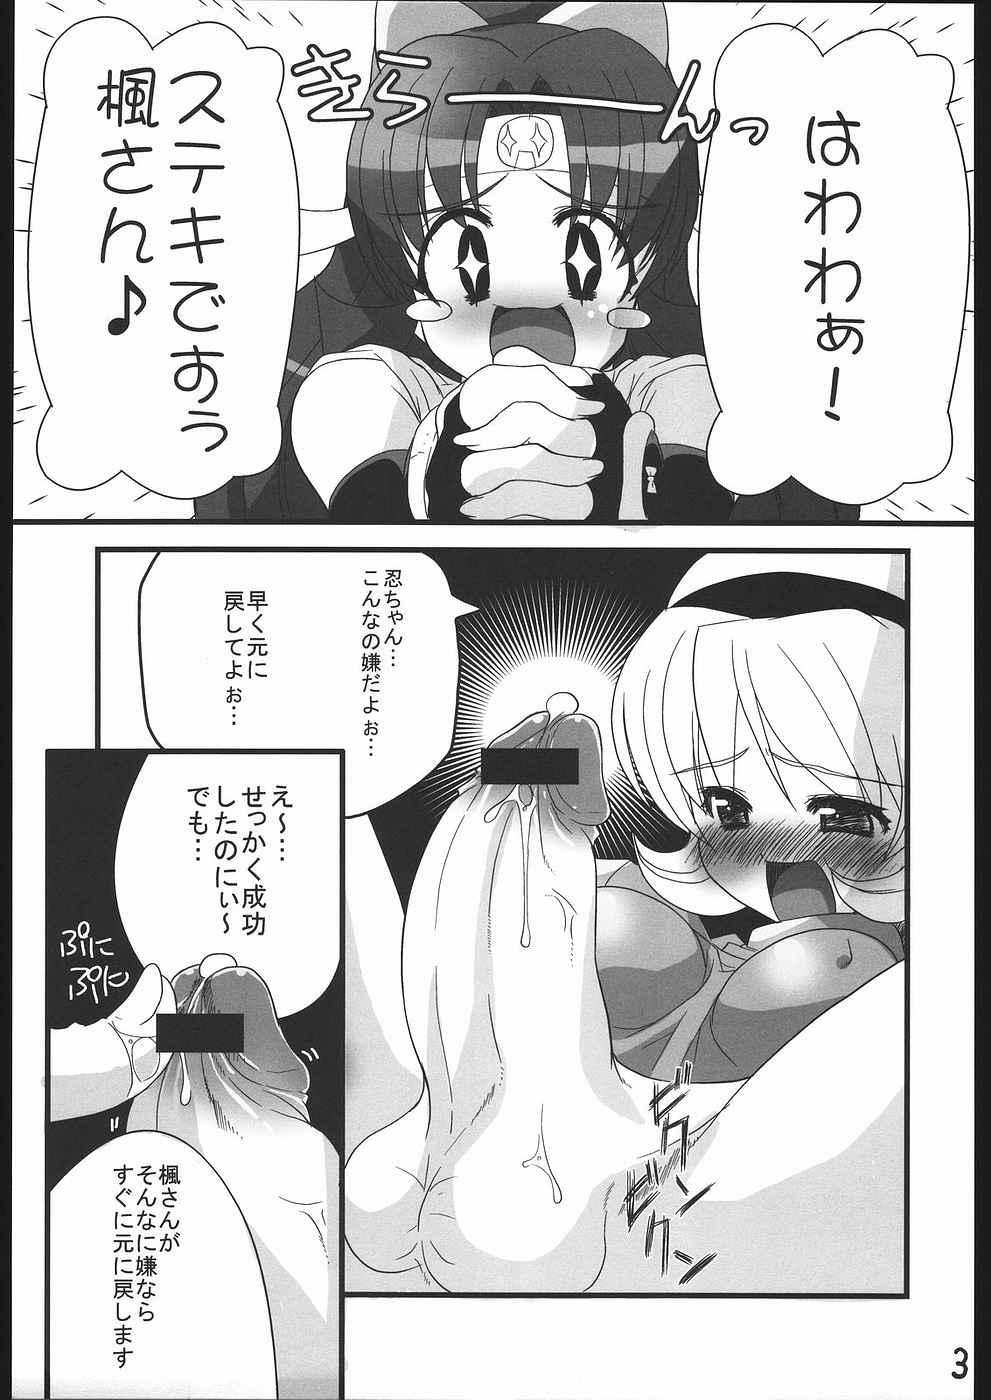 Amigos Ninpou Ranchiki Sawagi! - 2x2 shinobuden Mamada - Page 4